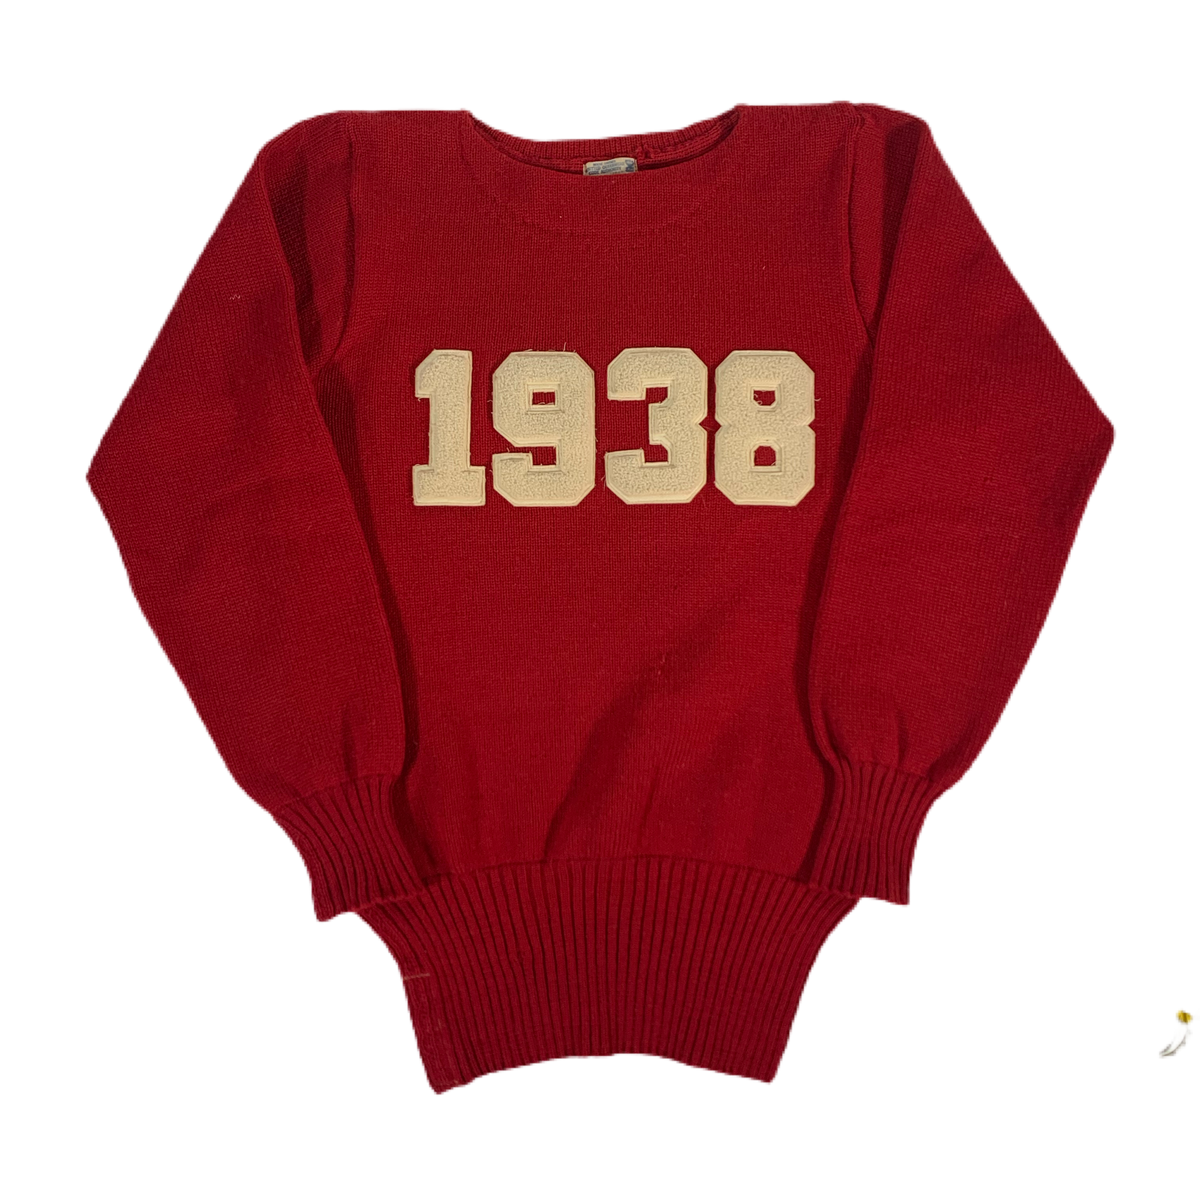 Vintage Harvard University “1938” Knit Sweater - jointcustodydc